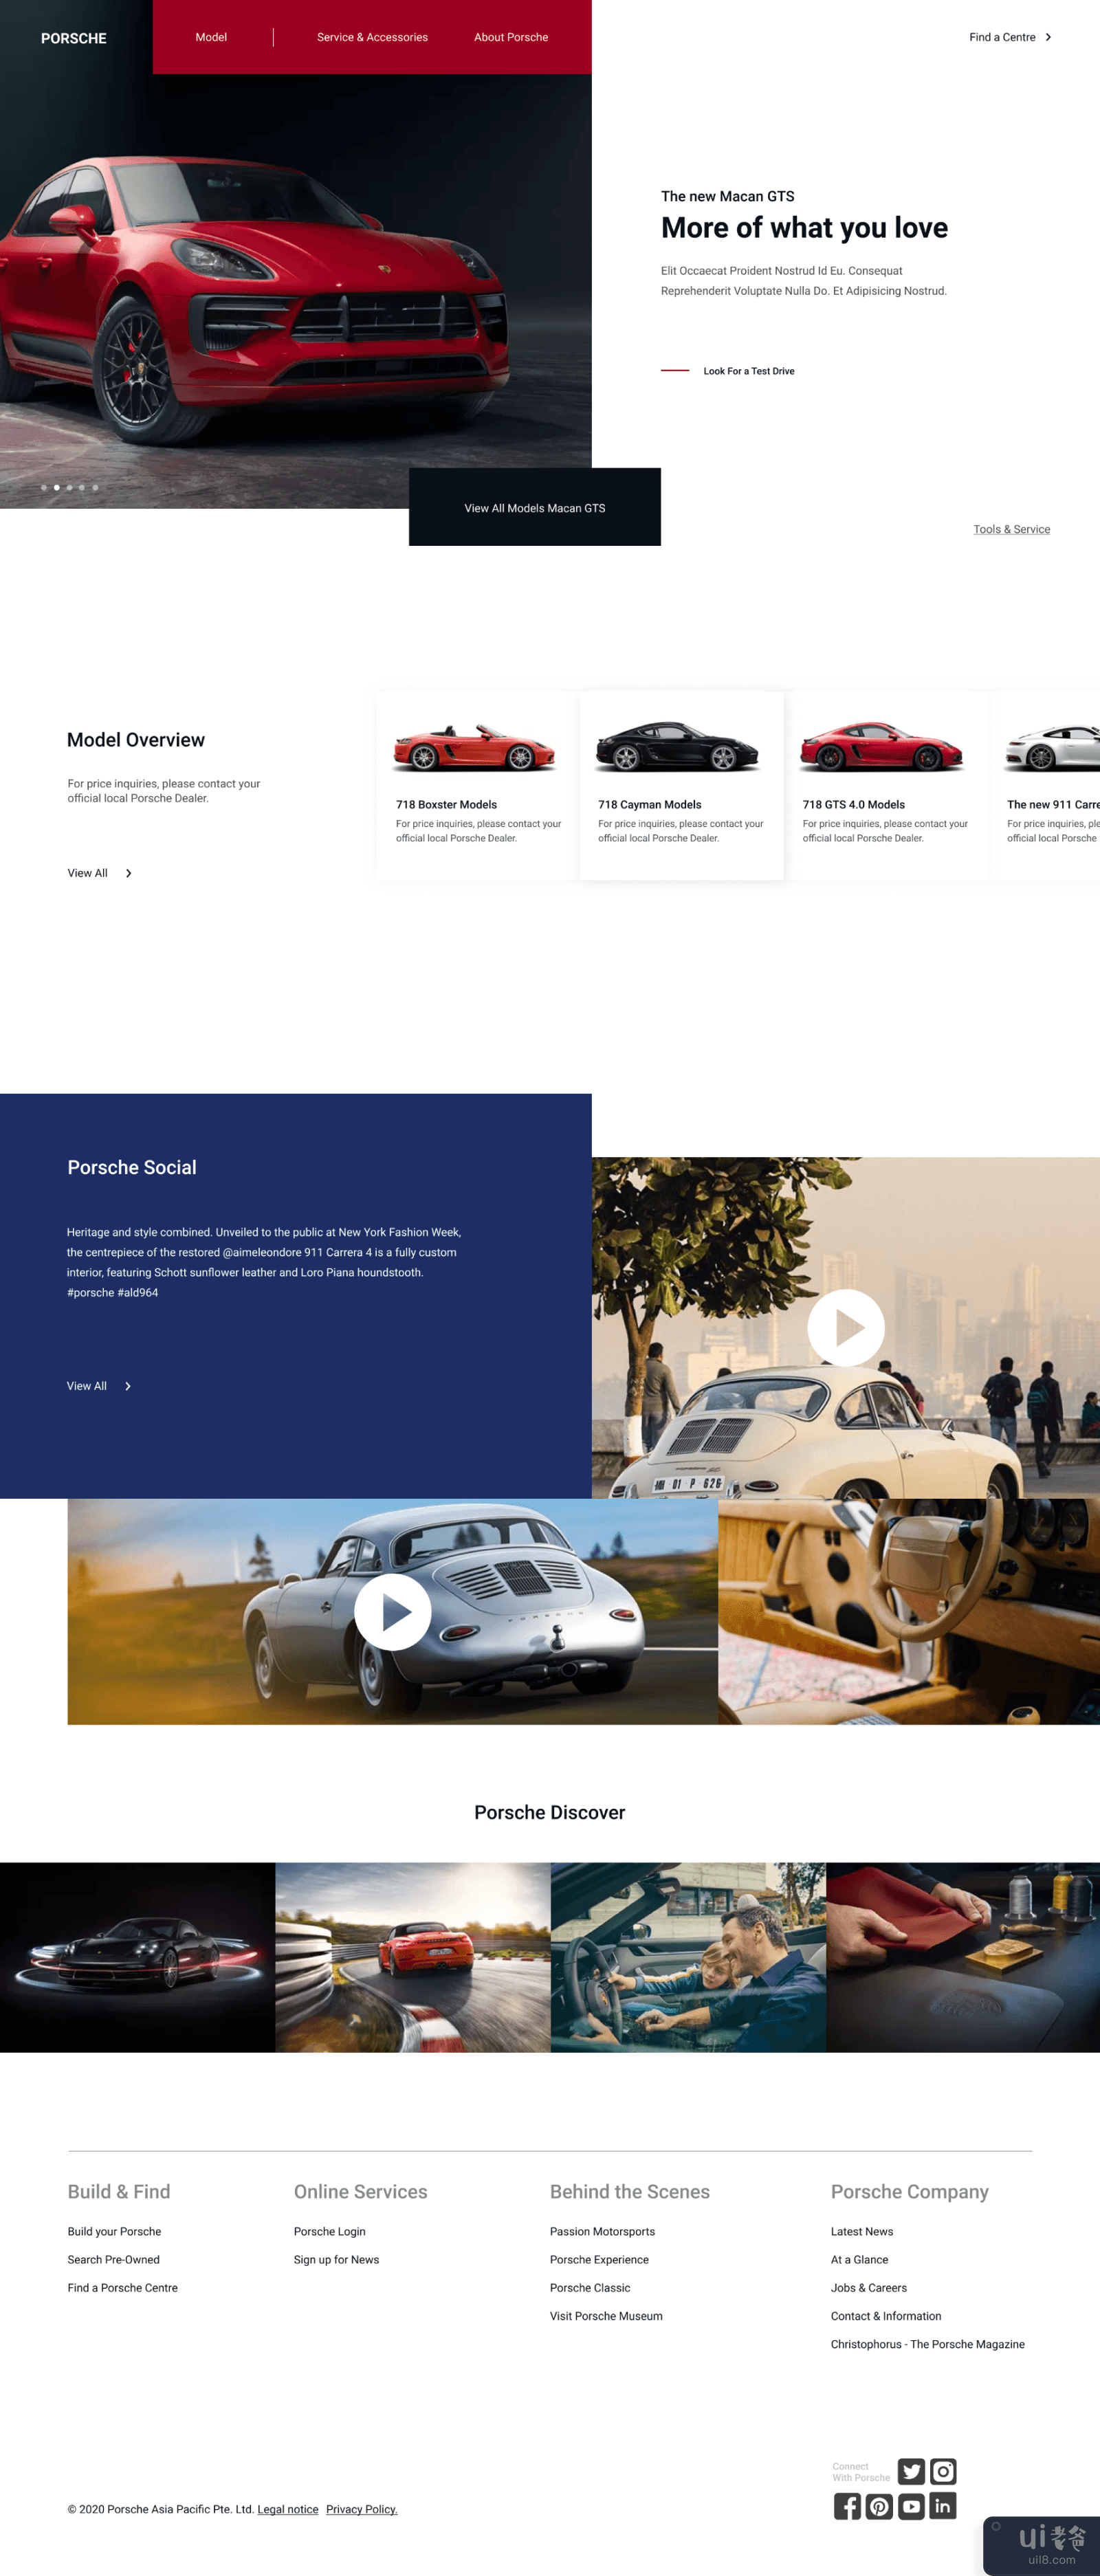 保时捷登陆页面(Porsche Landing Page)插图